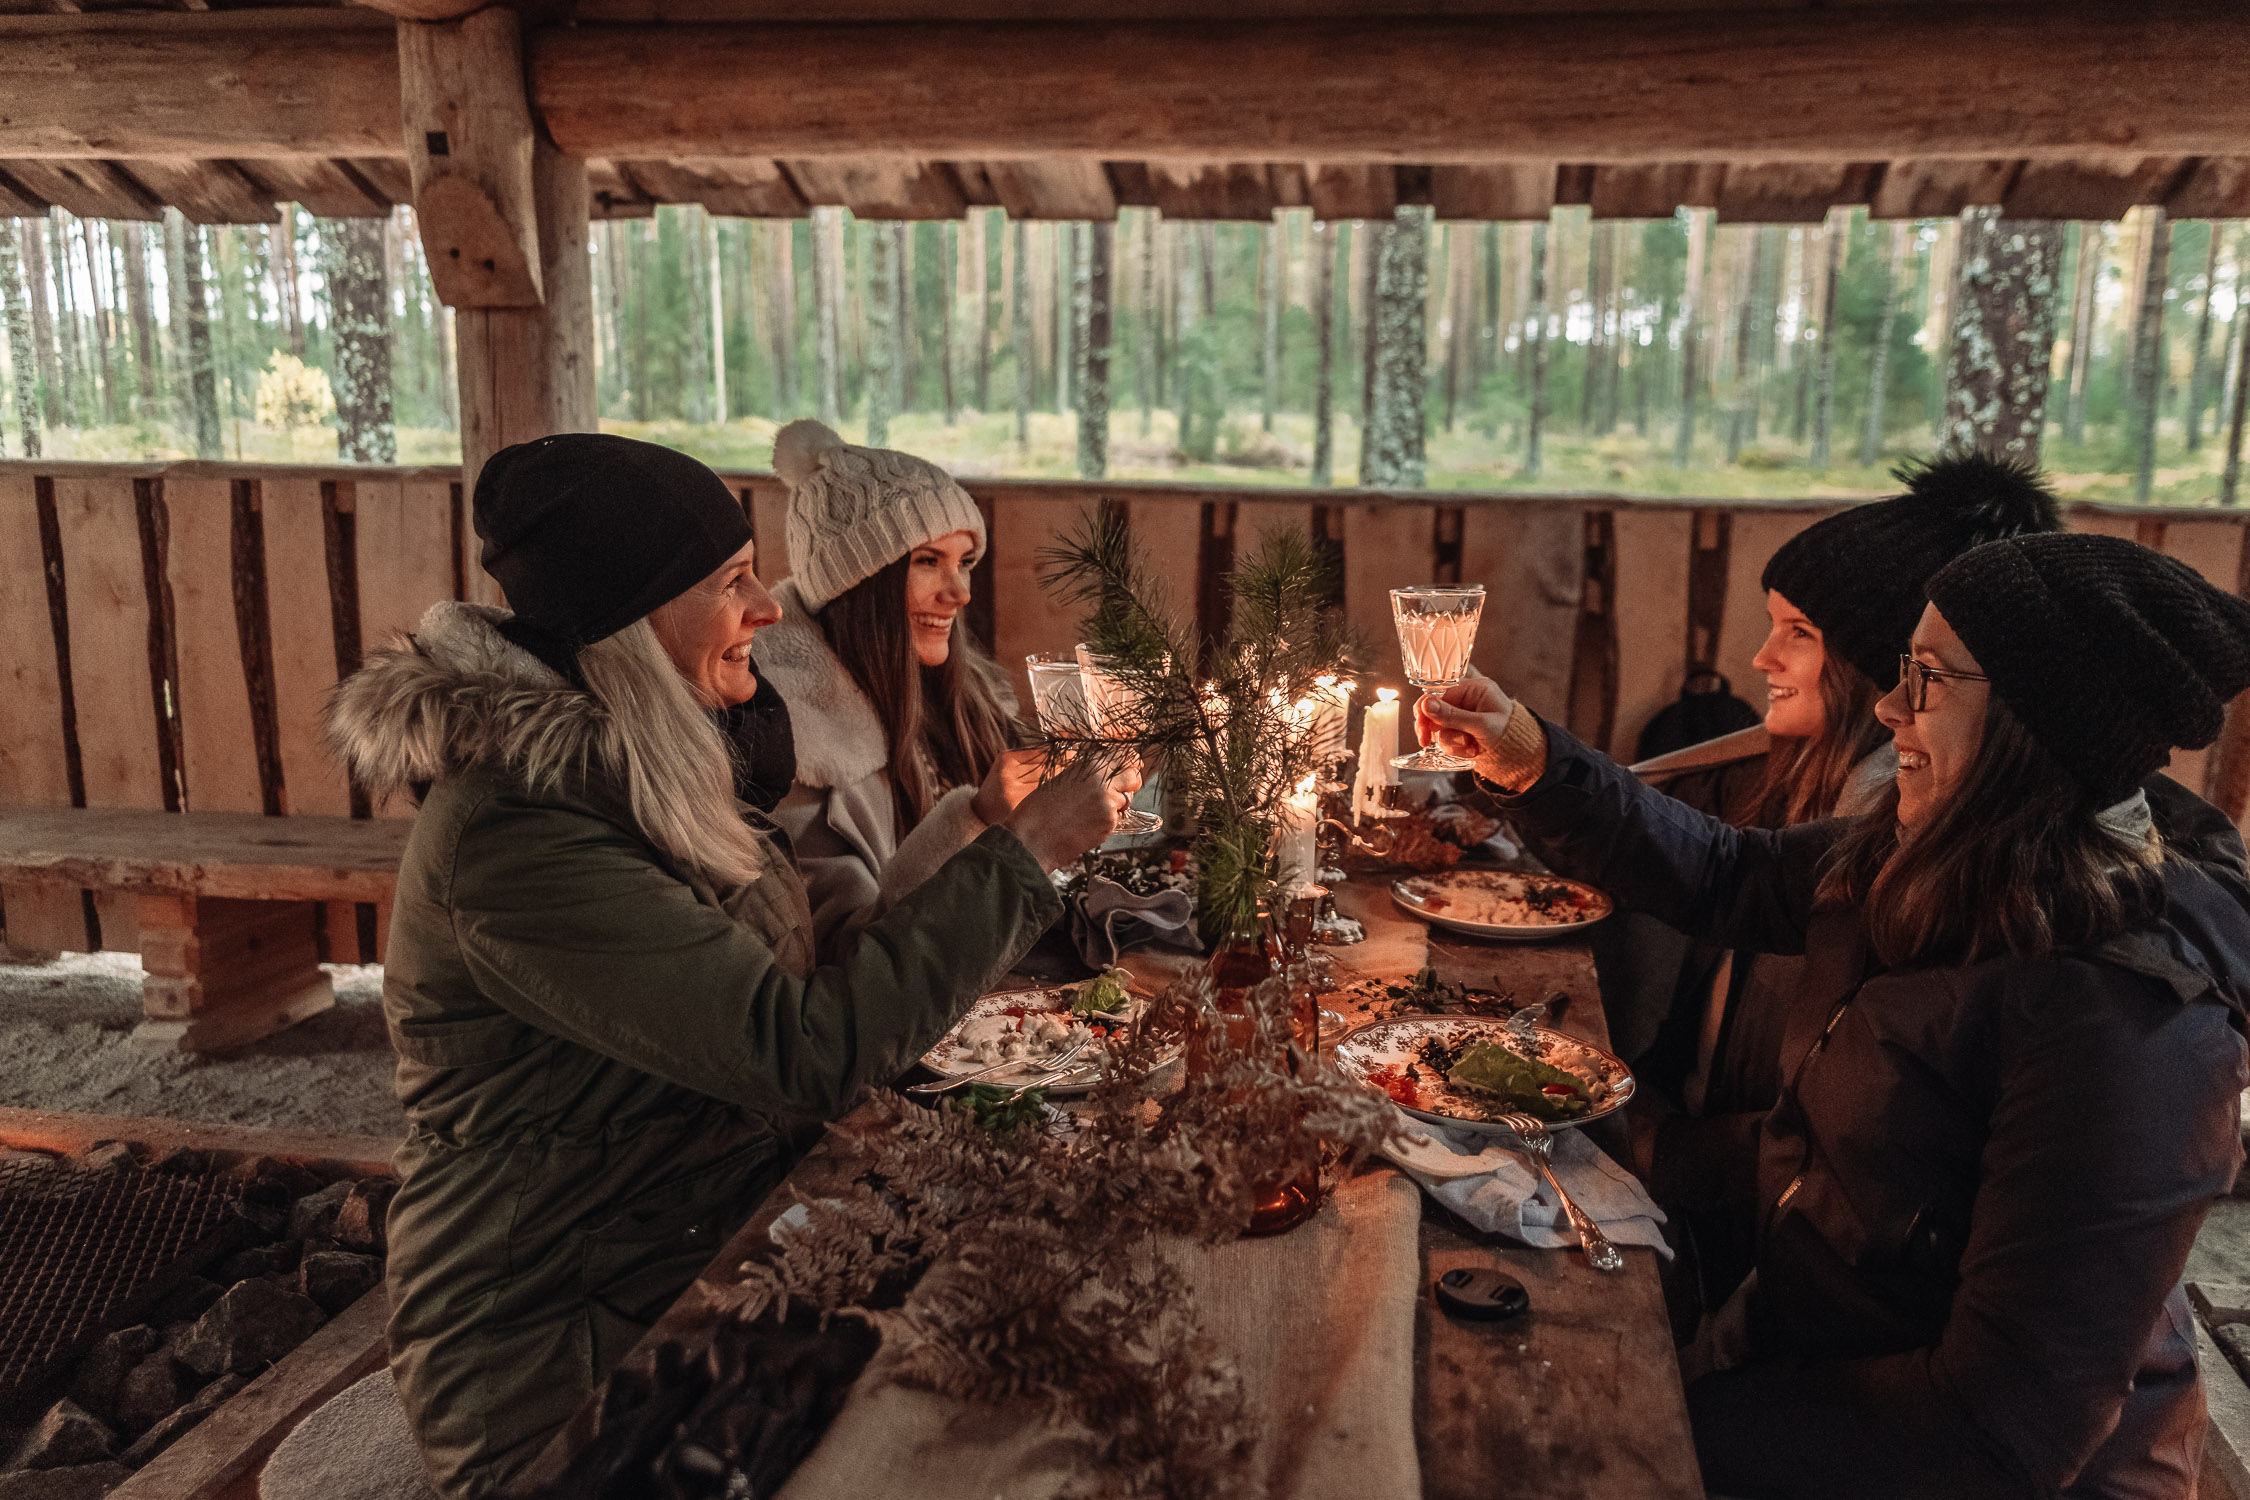 The food experience "In da Woods" in Brevens Bruk, Örebro